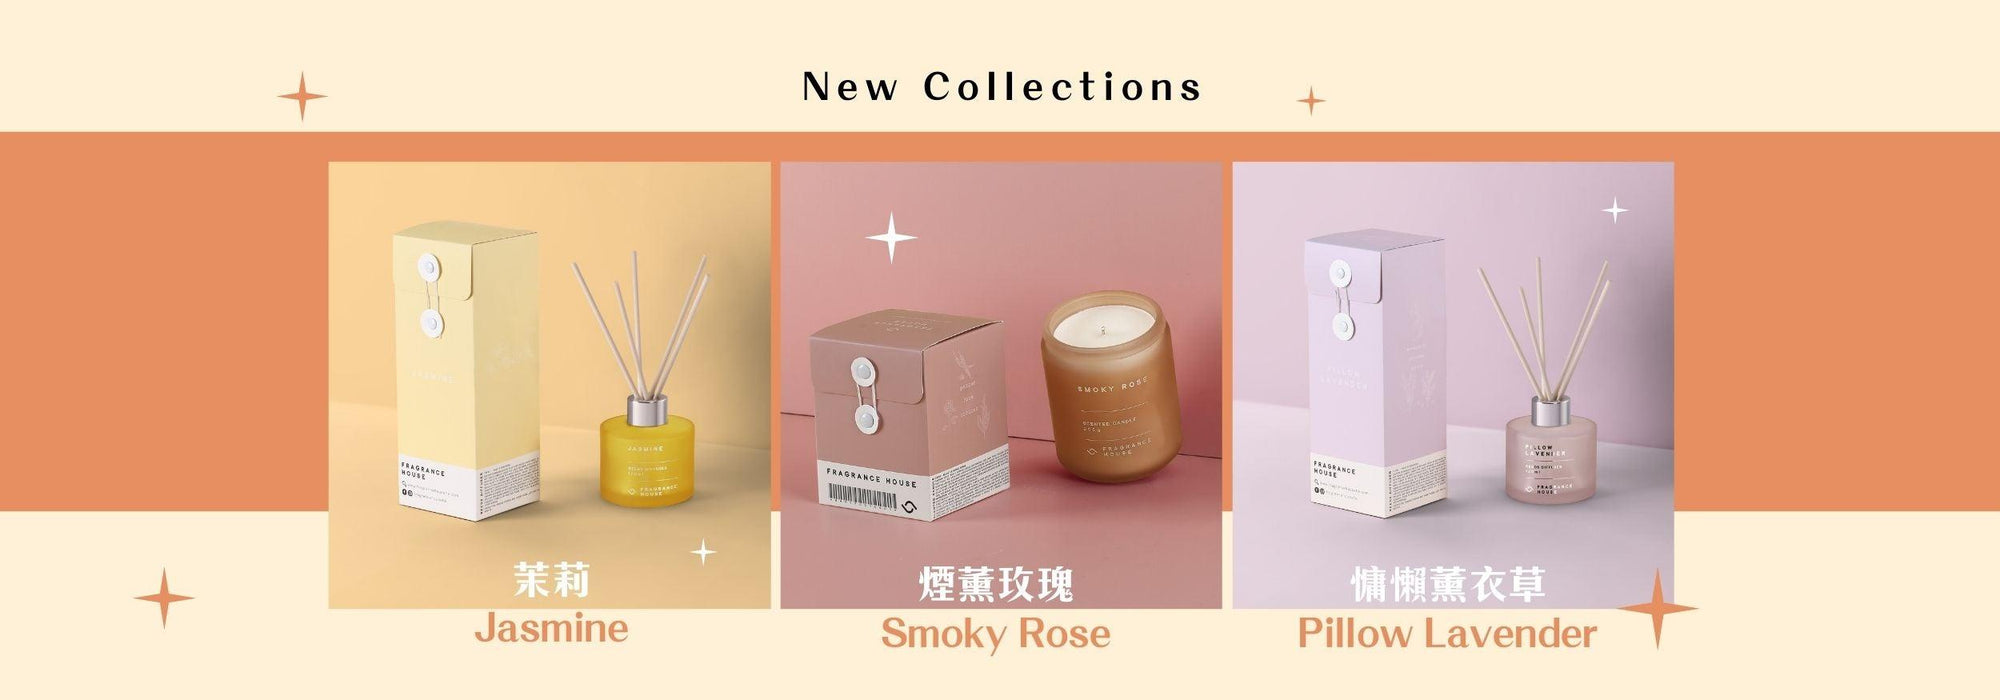 本地香水品牌FRAGRANCE HOUSE 三款新香氣系列 ✨ 香氣增加至34款 - Fragrance House HK